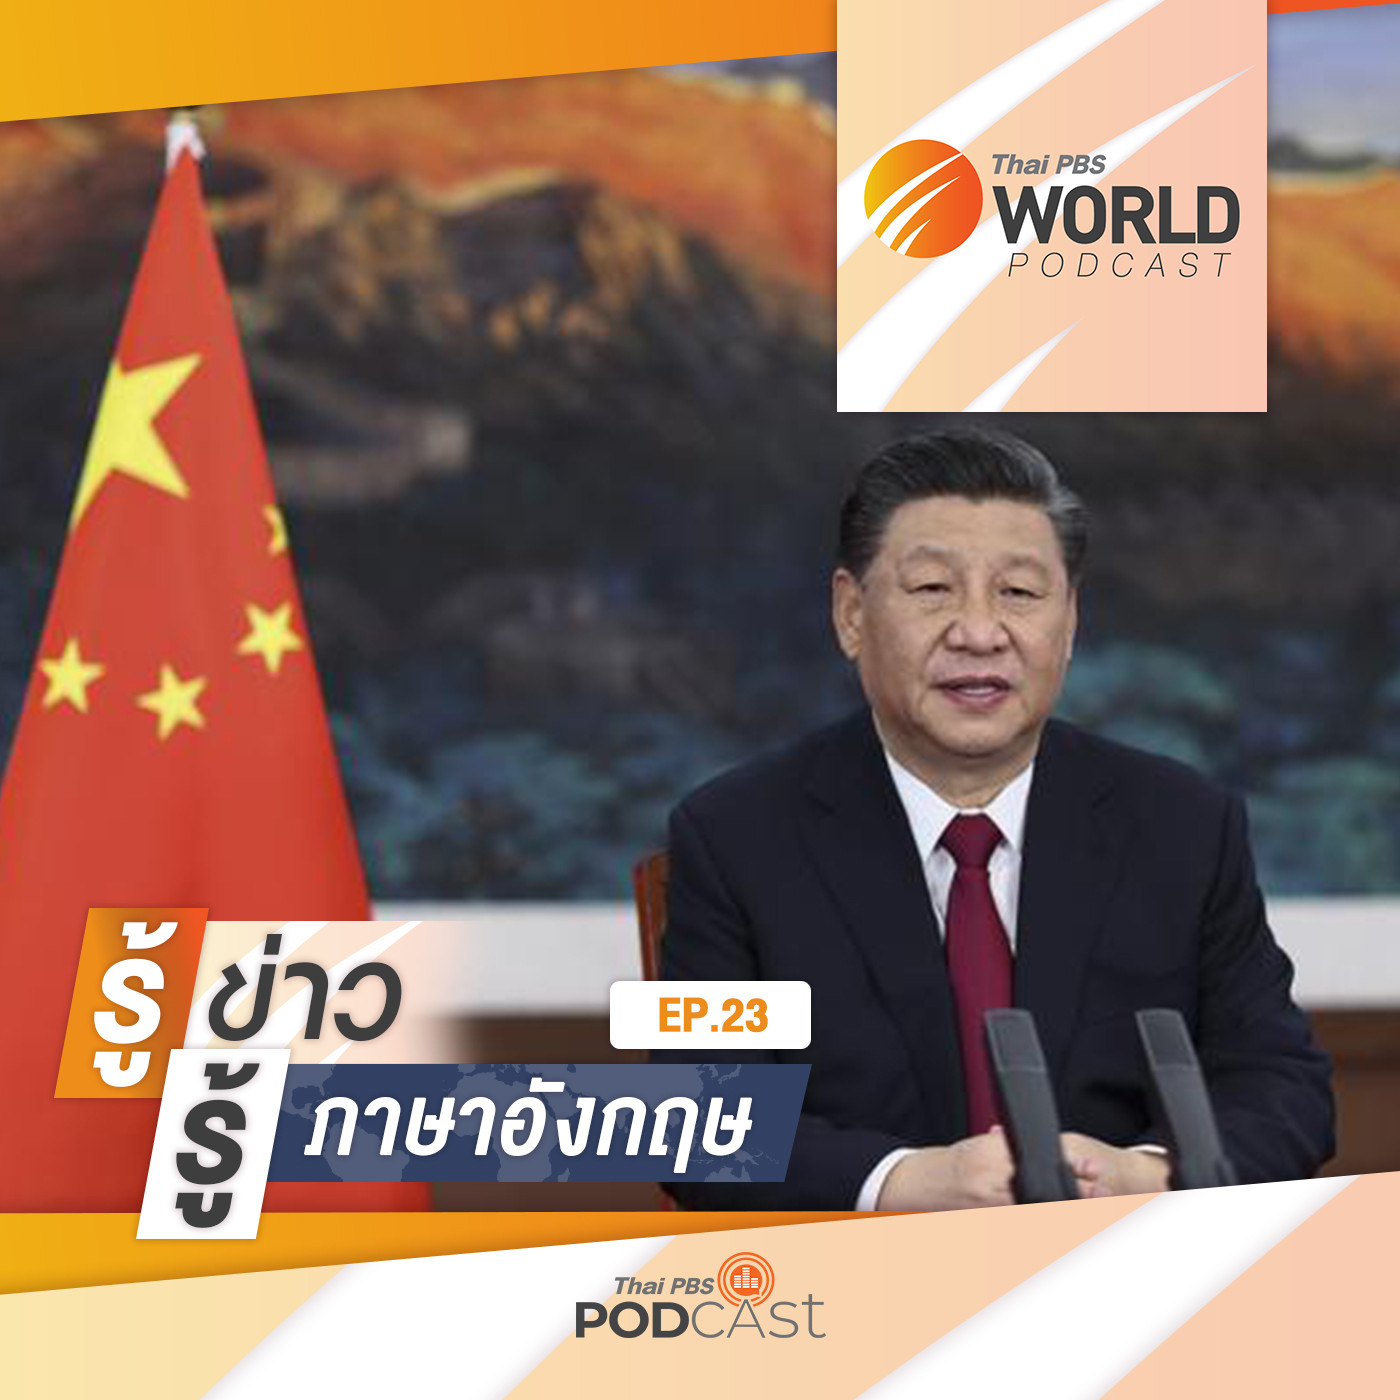 Thai PBS World Podcast - รู้ข่าว รู้ภาษาอังกฤษ EP. 23: รู้ข่าว รู้ภาษาอังกฤษ - “สี จิ้นผิง” ย้ำ จีนควรปรับภาพลักษณ์ ให้ดูน่ารัก  น่าเชื่อถือต่อนานาชาติ